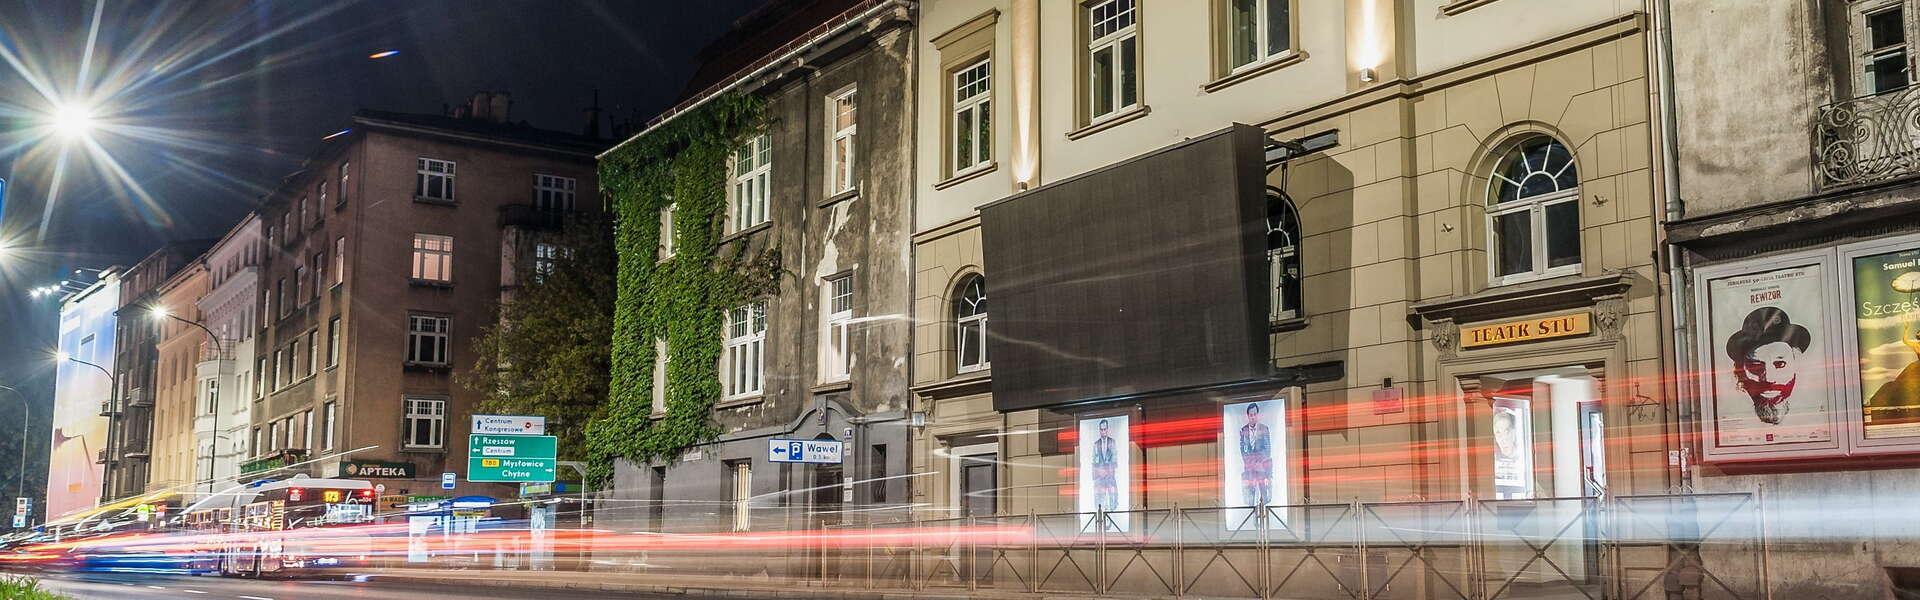 Bild: Aż strach się bać! Mroczne tajemnice Krakowa